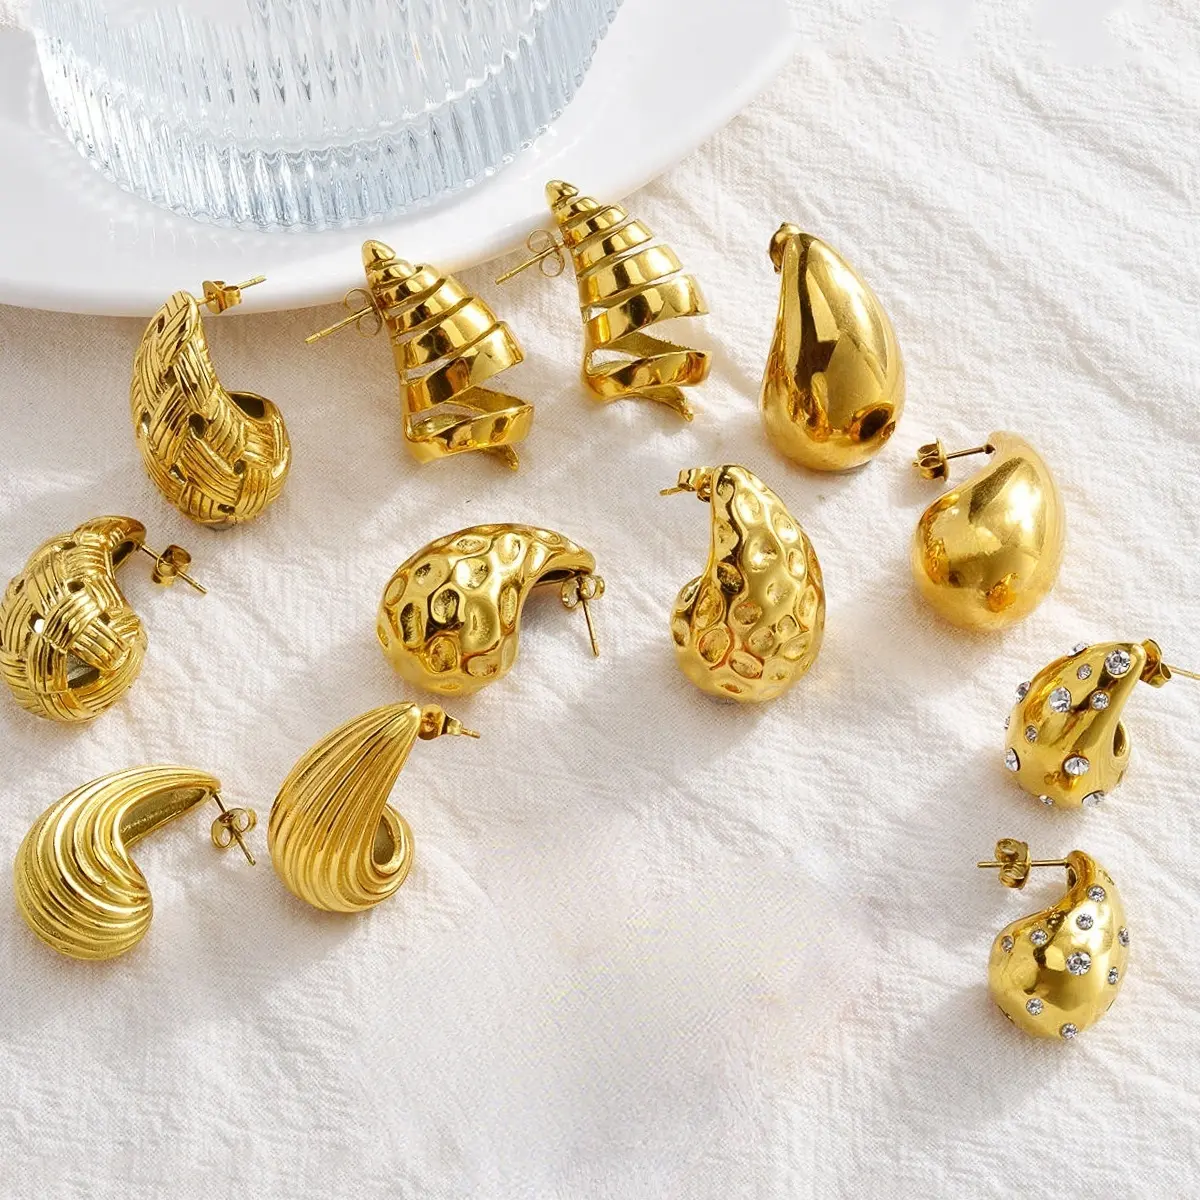 Hot Selling Minimalist Hollow Drop Oval Stud Earrings For Women 18k Gold Plated Stainless Steel Waterproof Jewelry